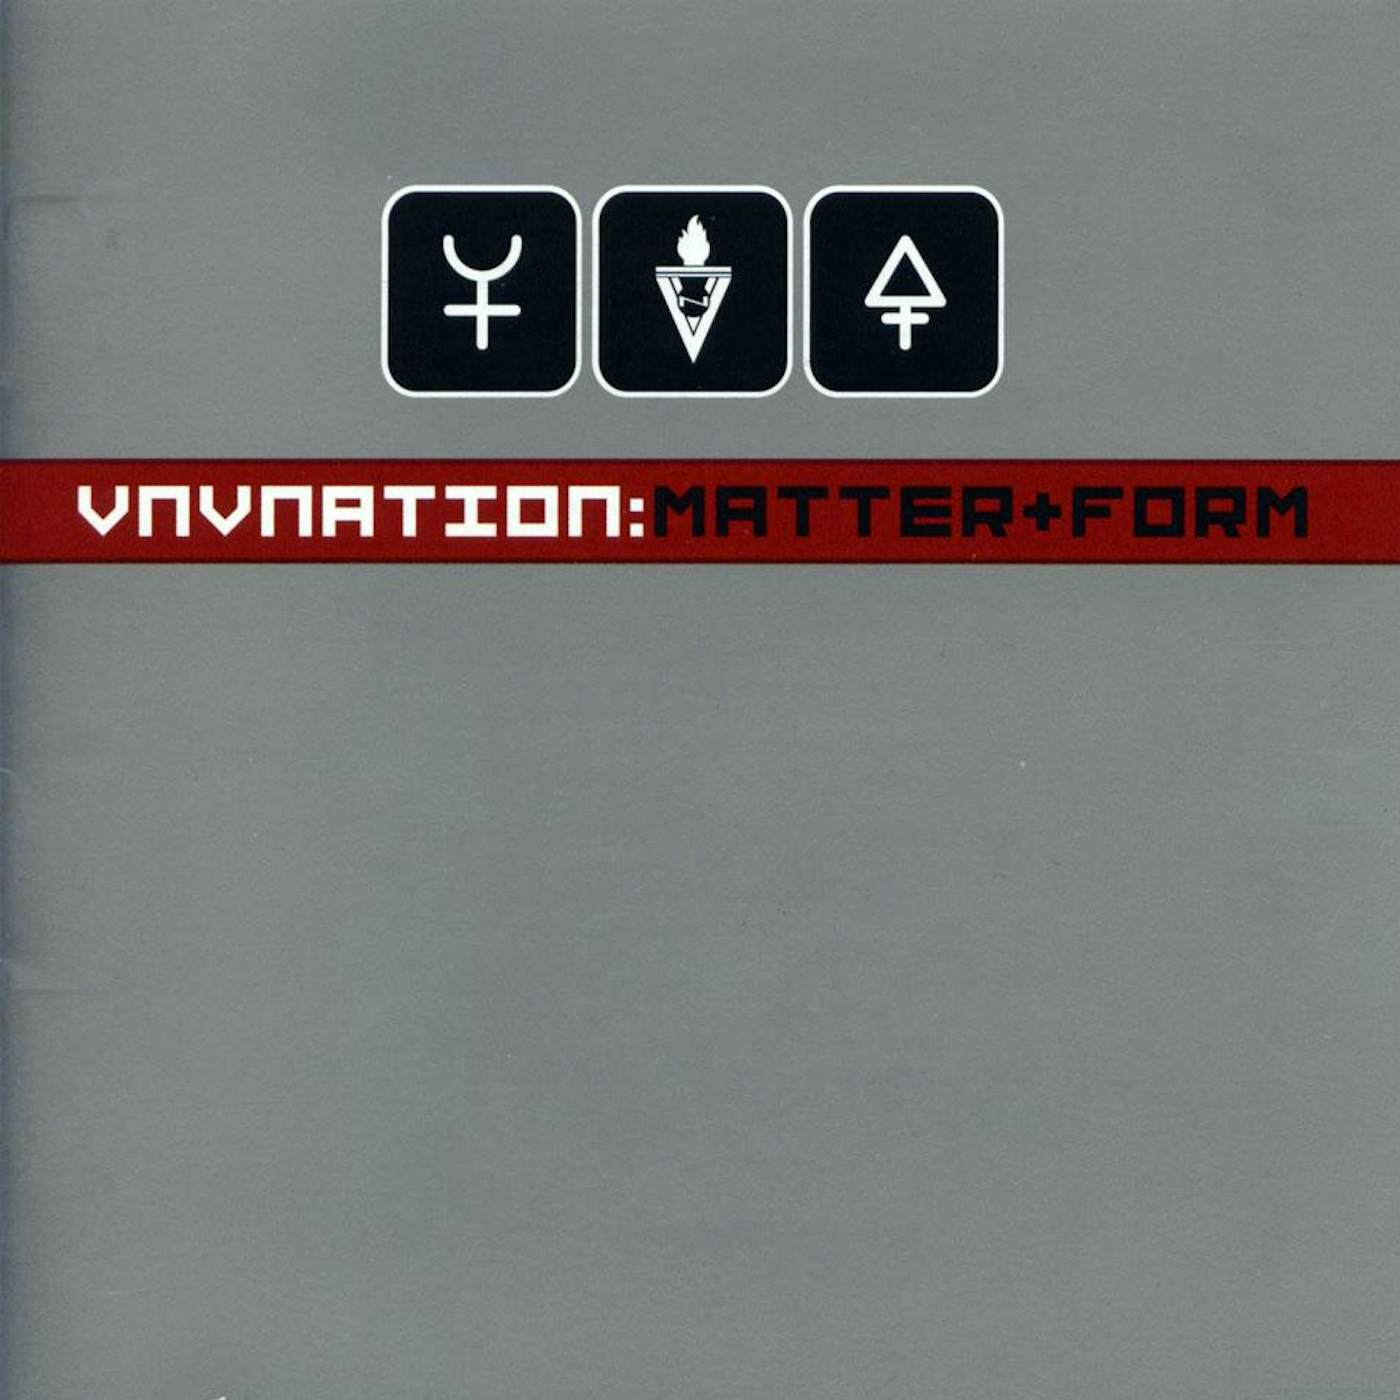 VNV Nation "Matter and Form" CD